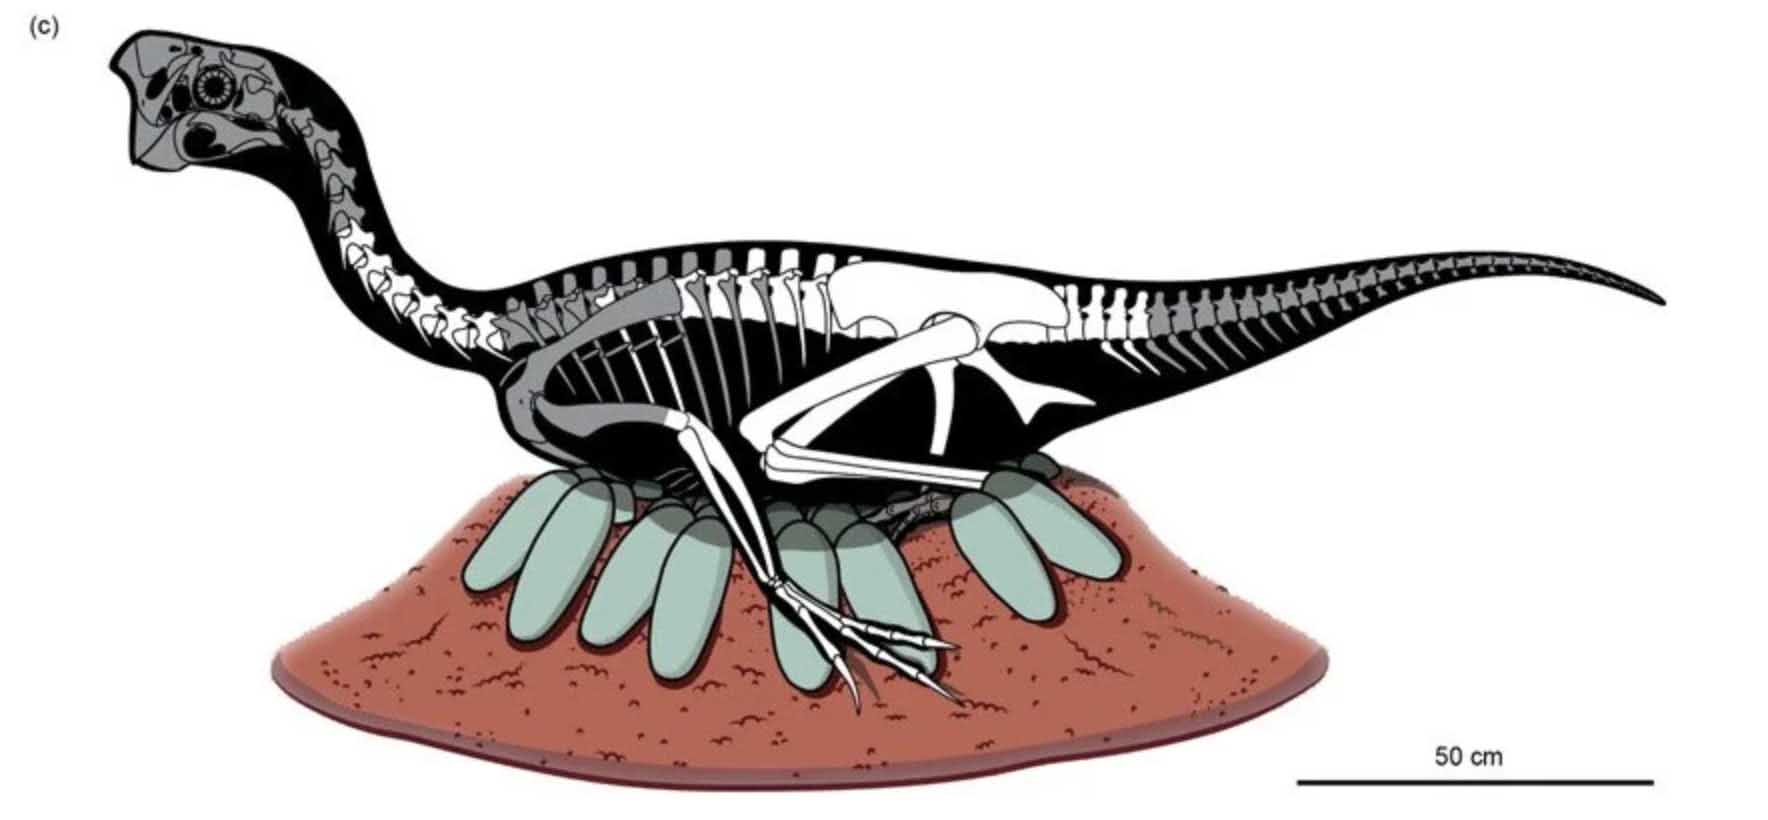 جنین دایناسور فوق العاده حفظ شده در تخم فسیل شده 3 کشف شد